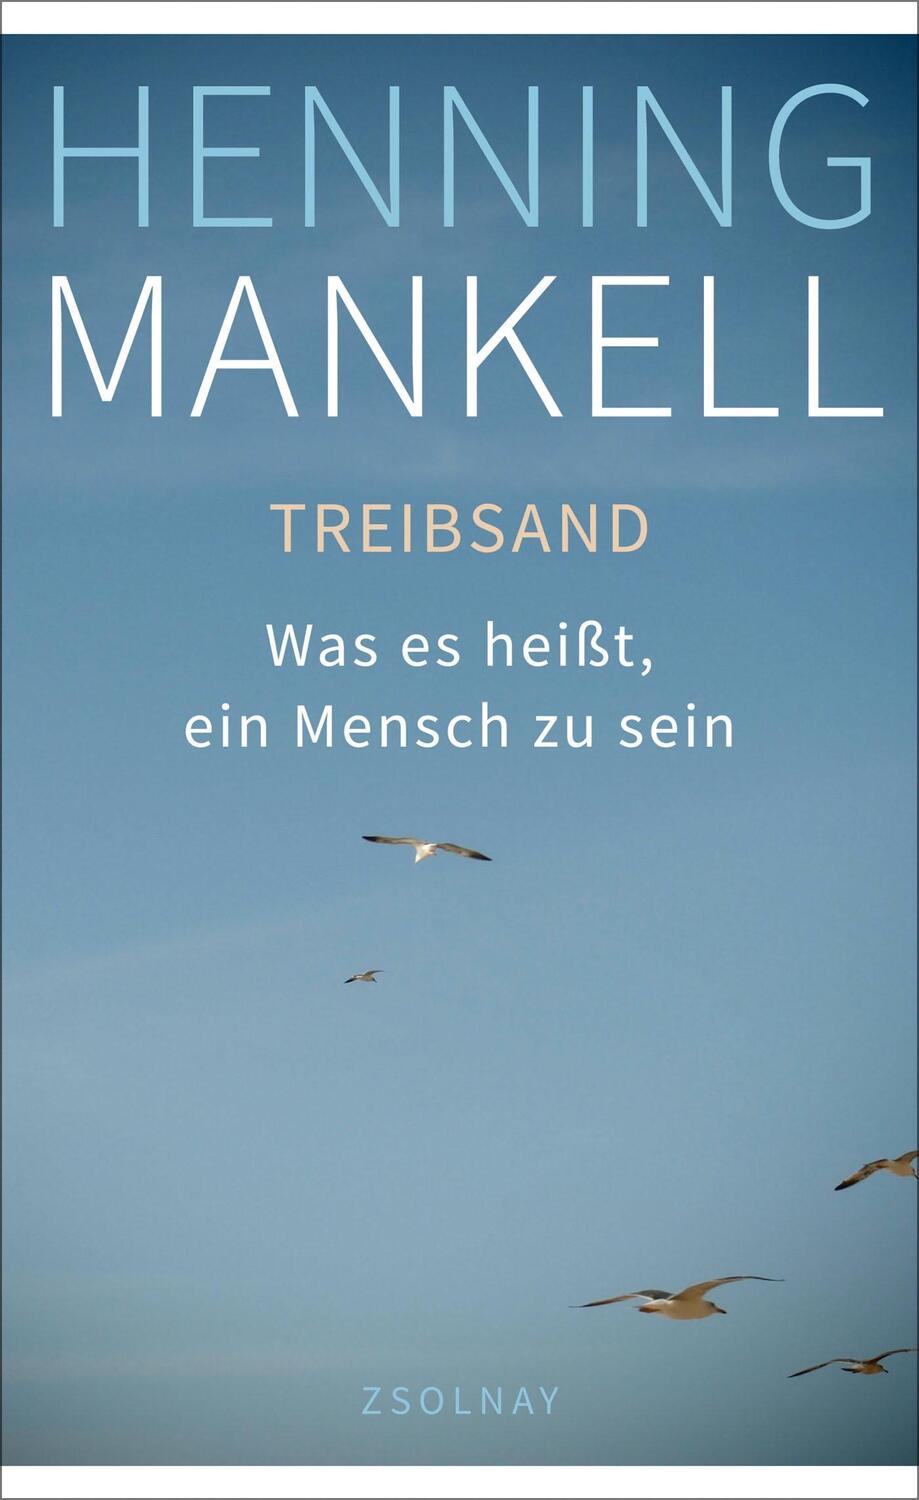 Treibsand - Mankell, Henning